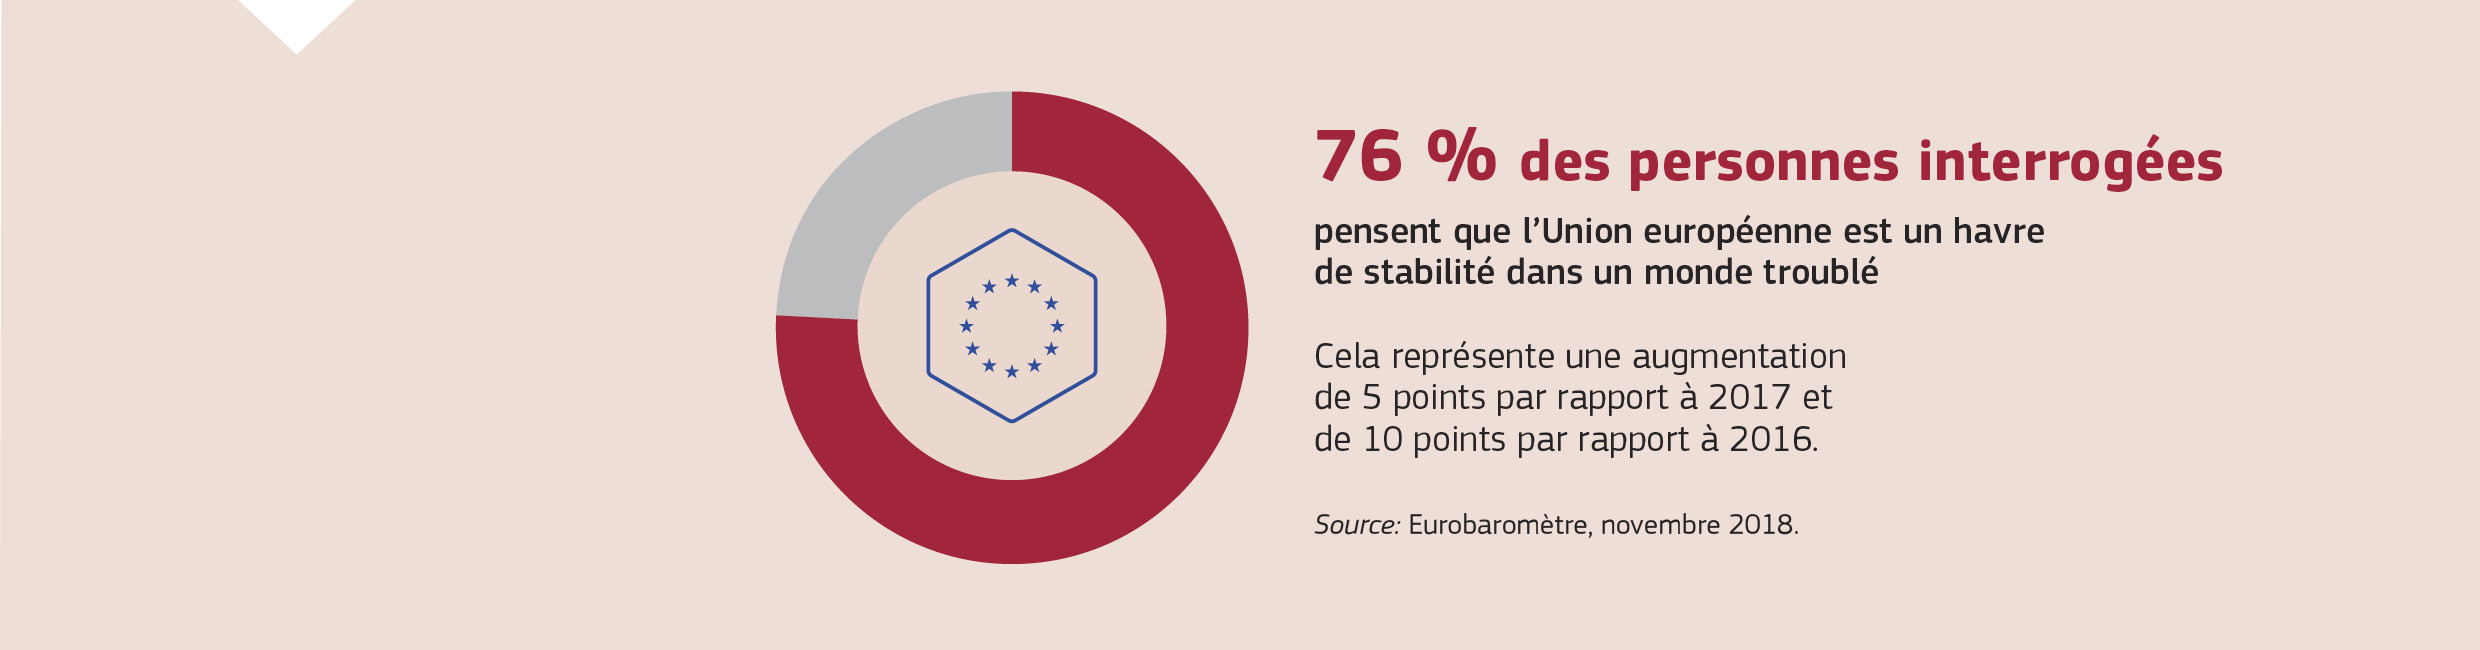 76 % des personnes interrogées pensent que l’Union européenne est un havre de stabilité dans un monde troublé. Cela représente une augmentation de 5 points par rapport à 2017 et de 10 points par rapport à 2016.